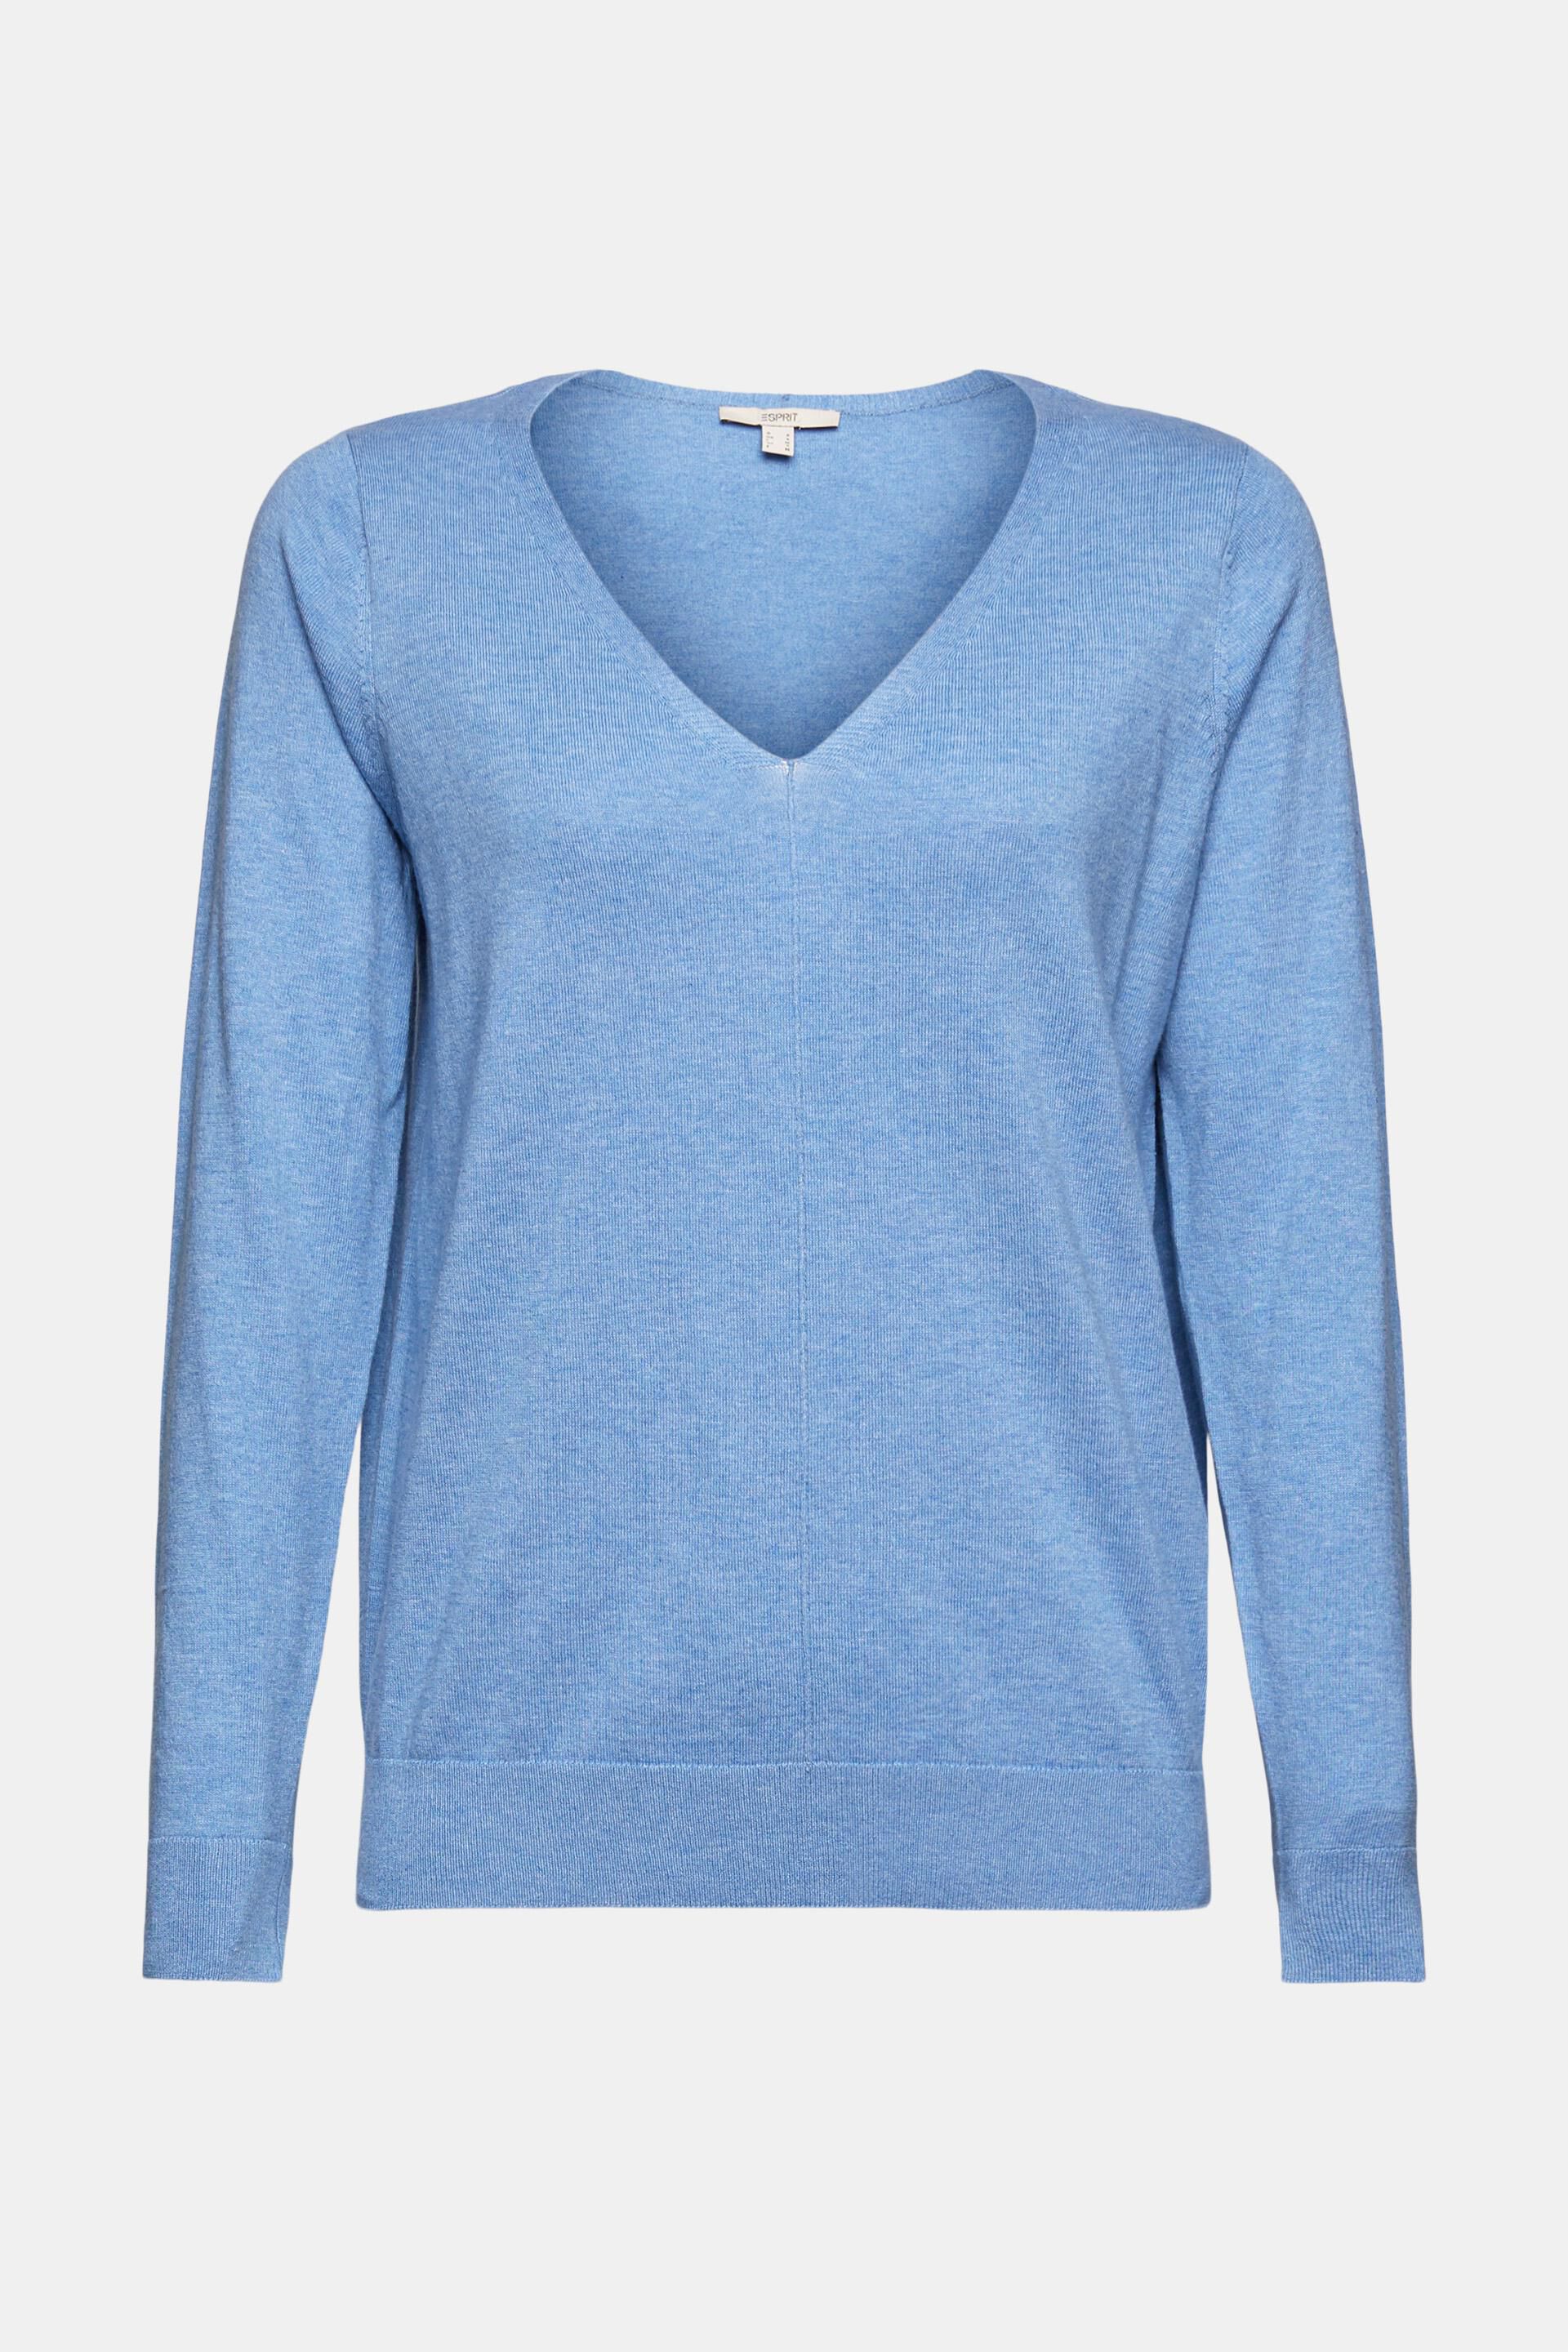 Esprit Trui Los Gebreid in het Blauw Dames Kleding voor voor Truien en gebreide kleding voor Mouwloze truien 